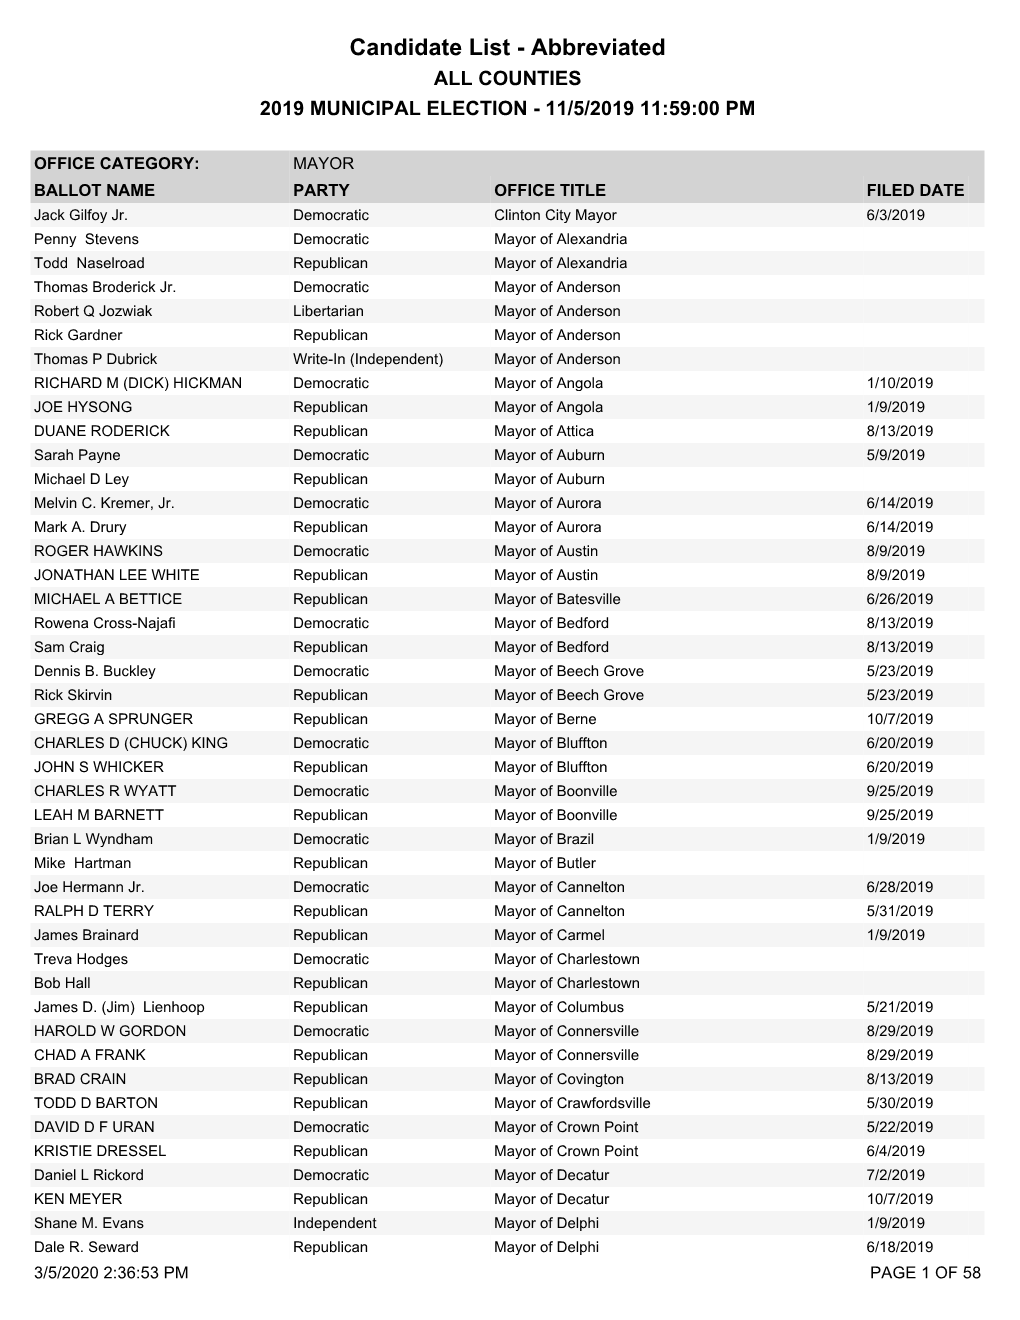 2019 Municipal Election Candidate List